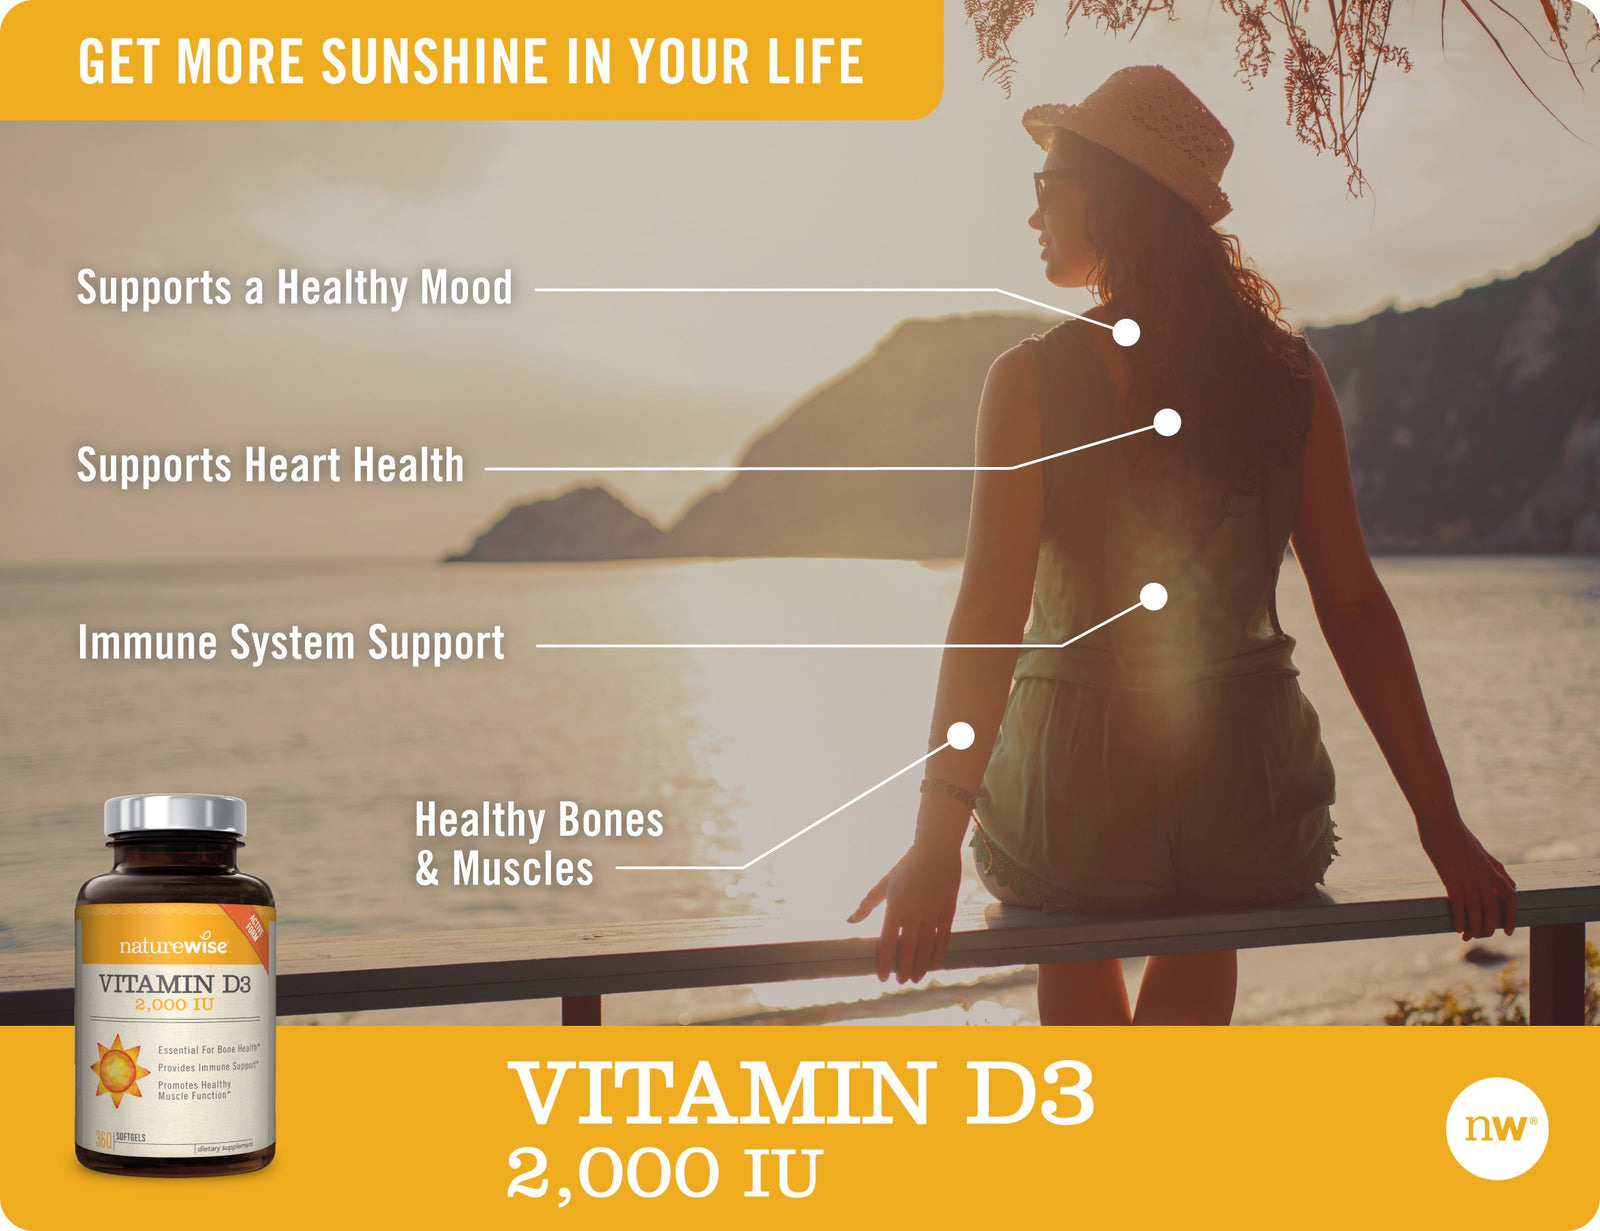 Vitamin D3 2,000 IU benefits 